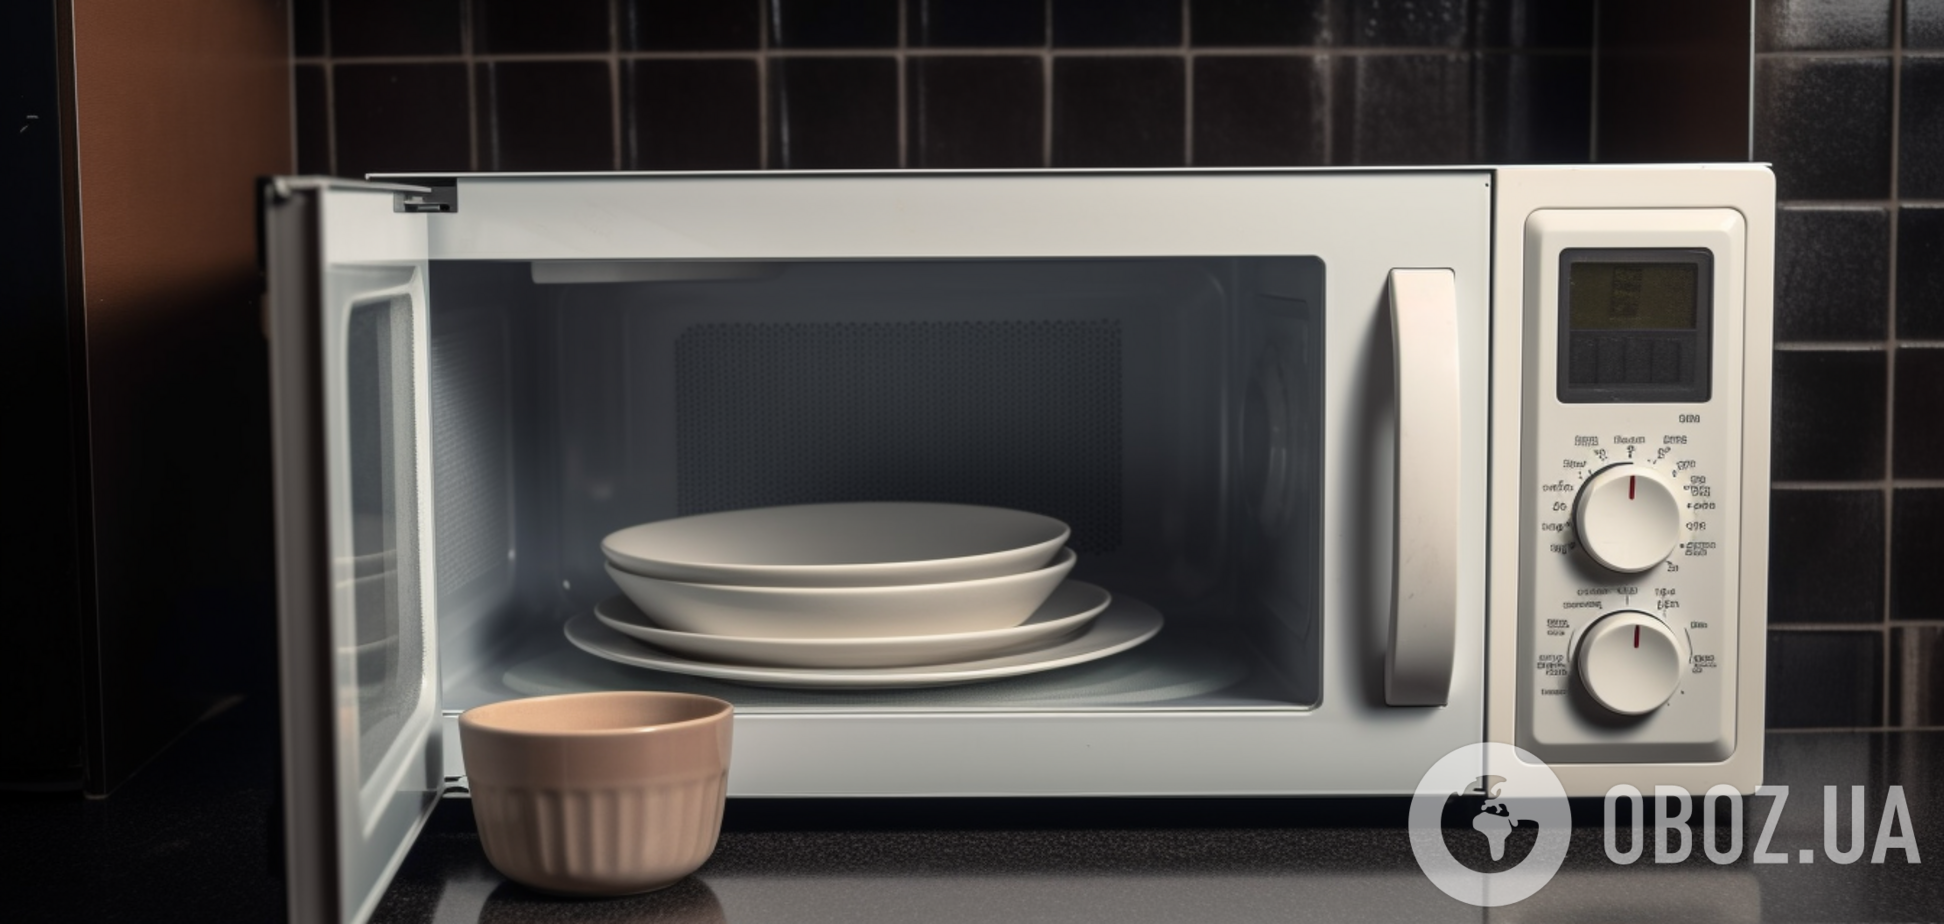 Какую посуду нельзя ставить в микроволновку: может даже сломаться